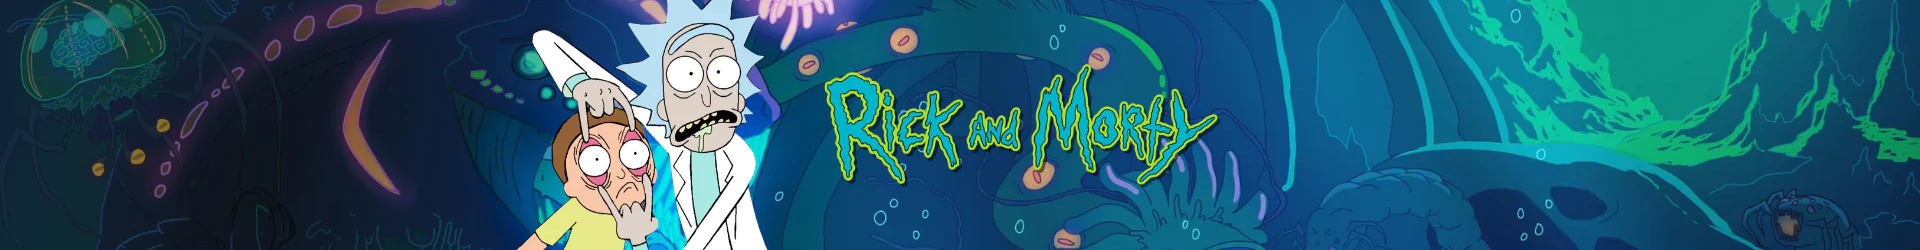 Rick és Morty irattartók banner